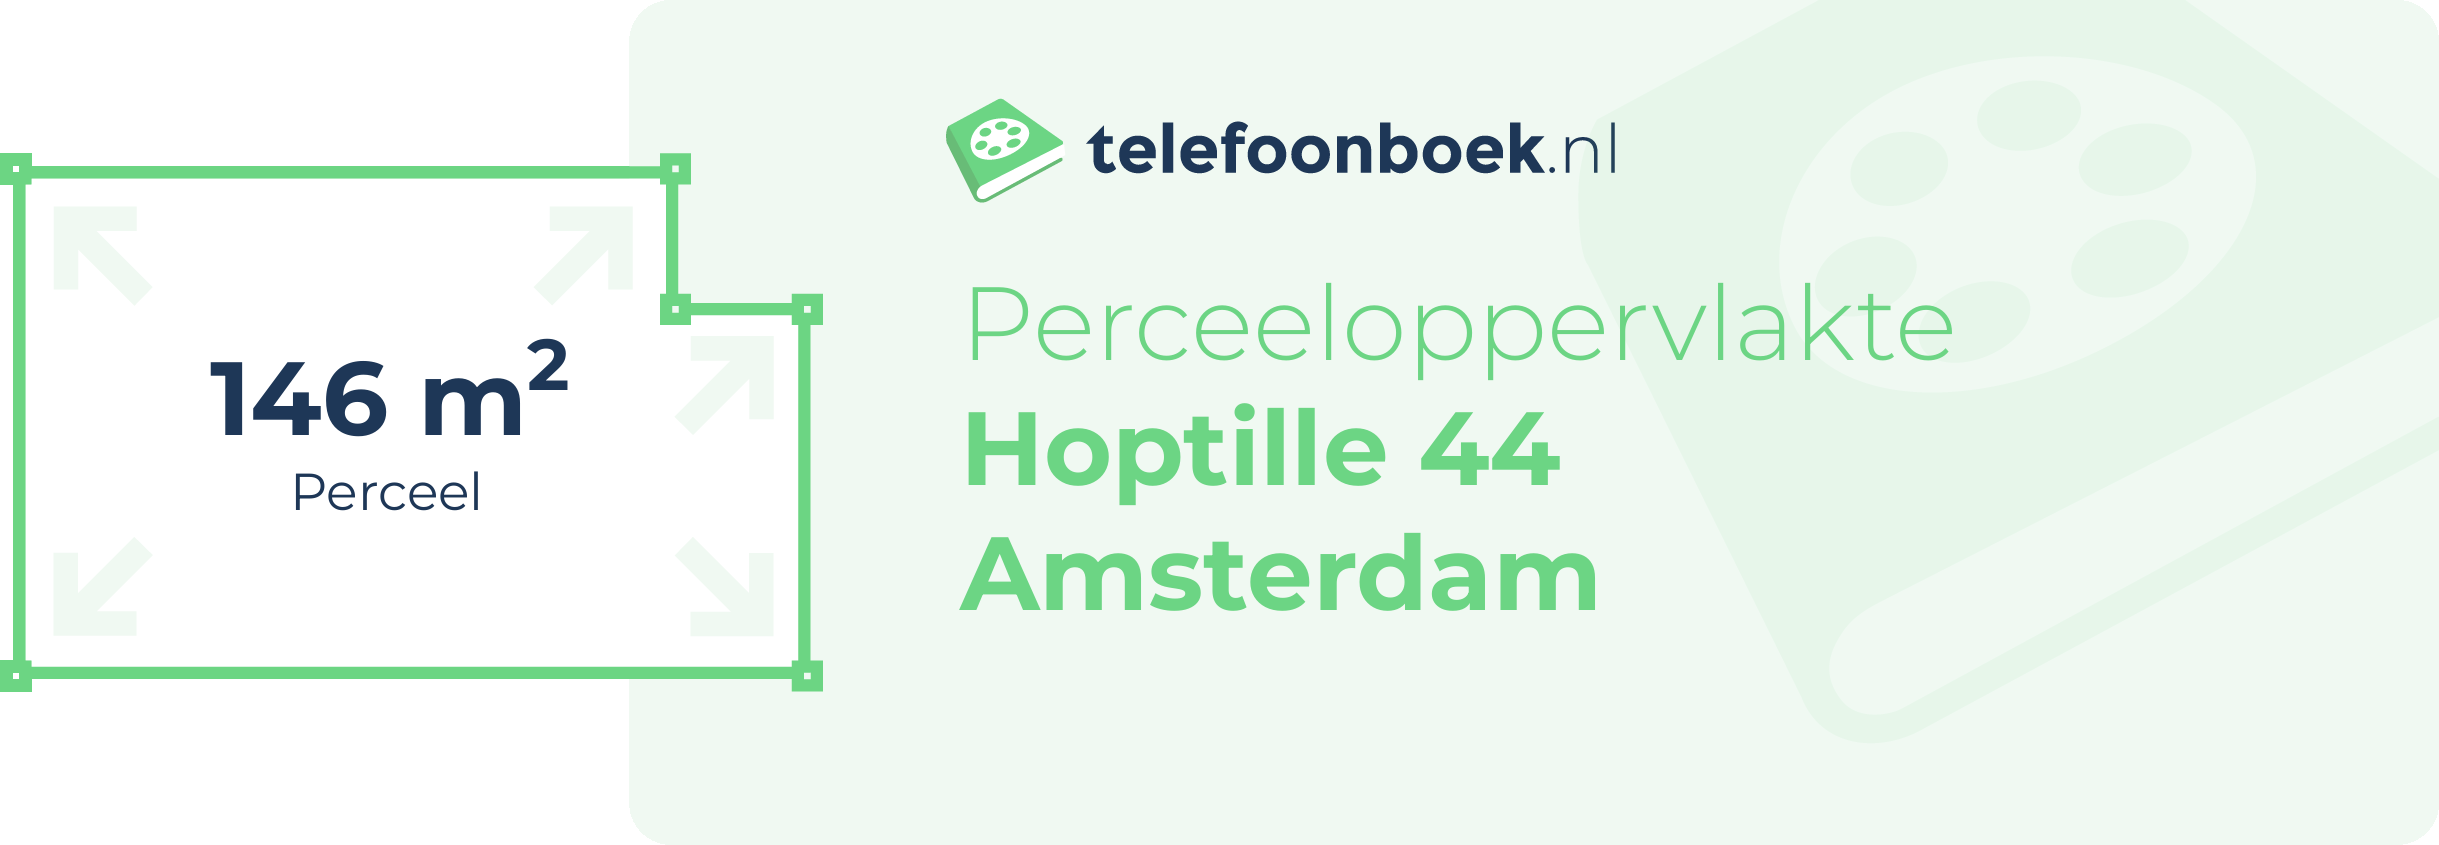 Perceeloppervlakte Hoptille 44 Amsterdam